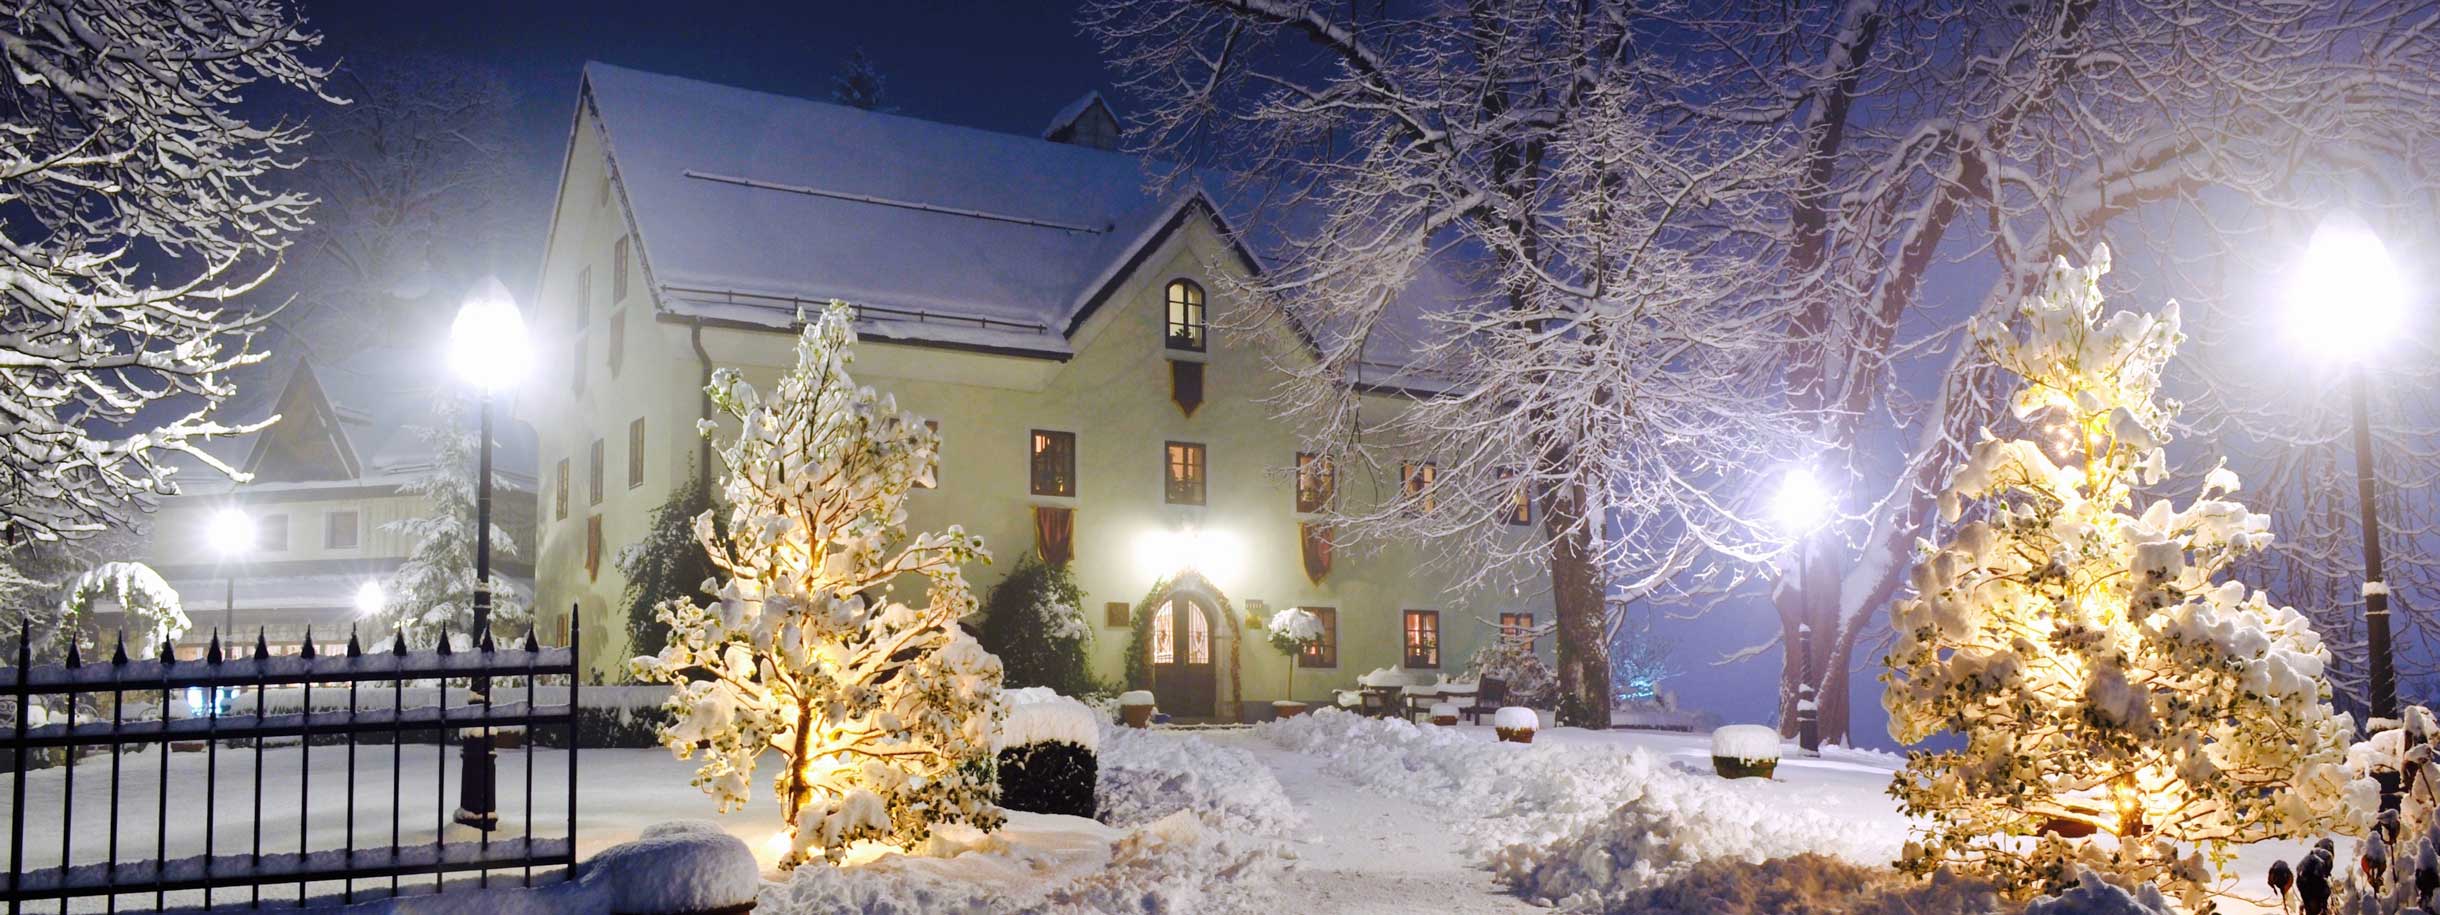 Kendov dvorec in winter